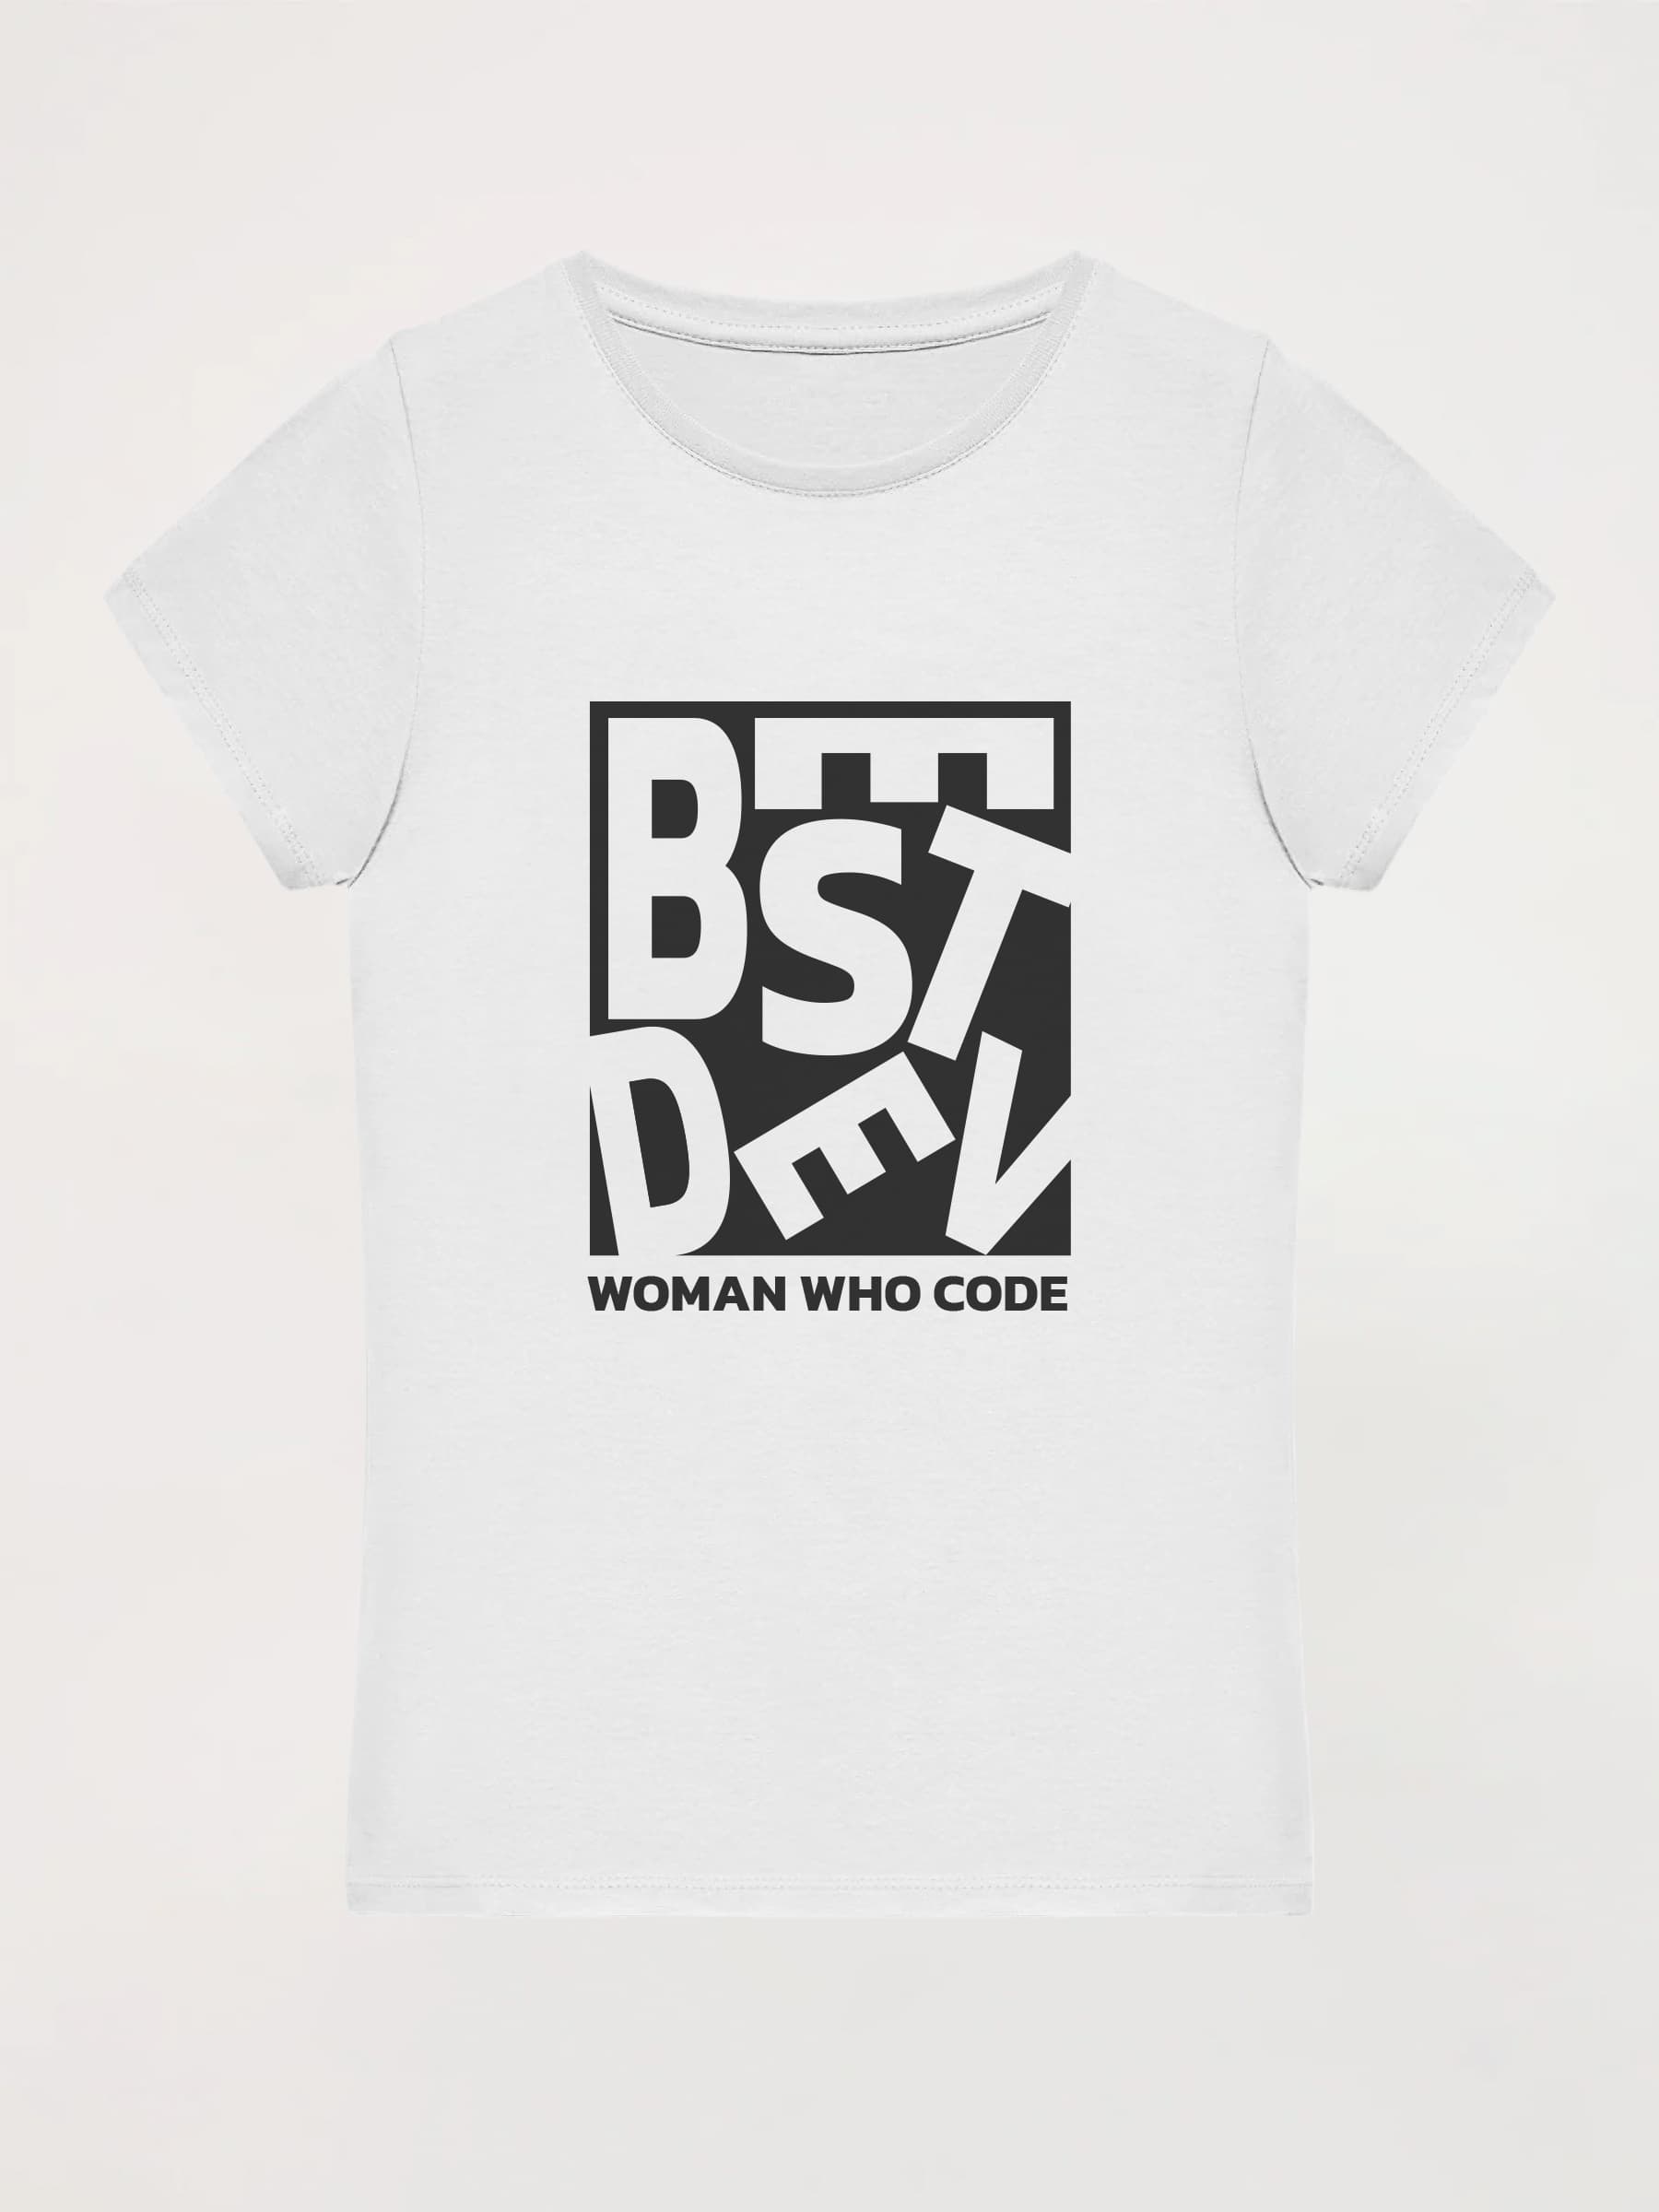 Camiseta mujer Best Dev Woman Who Code